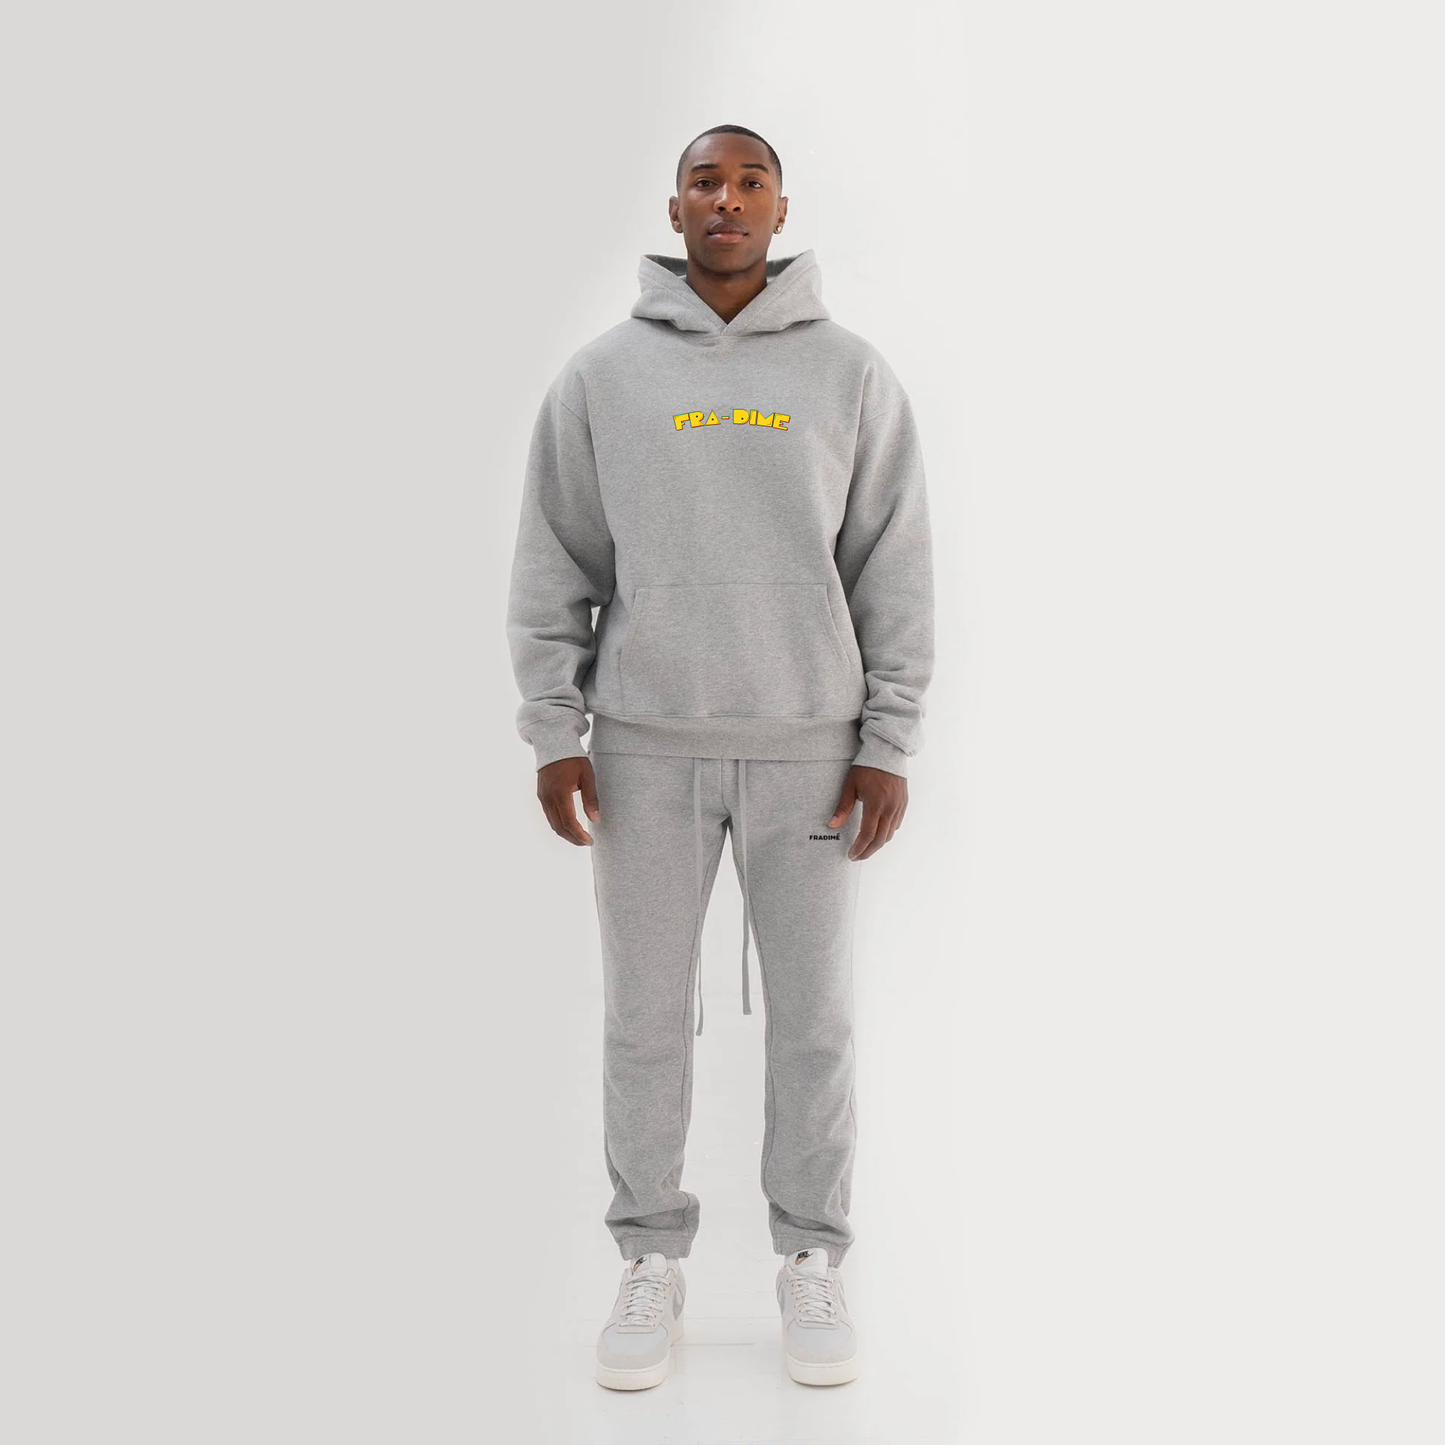 Pacman hoodie marl grey